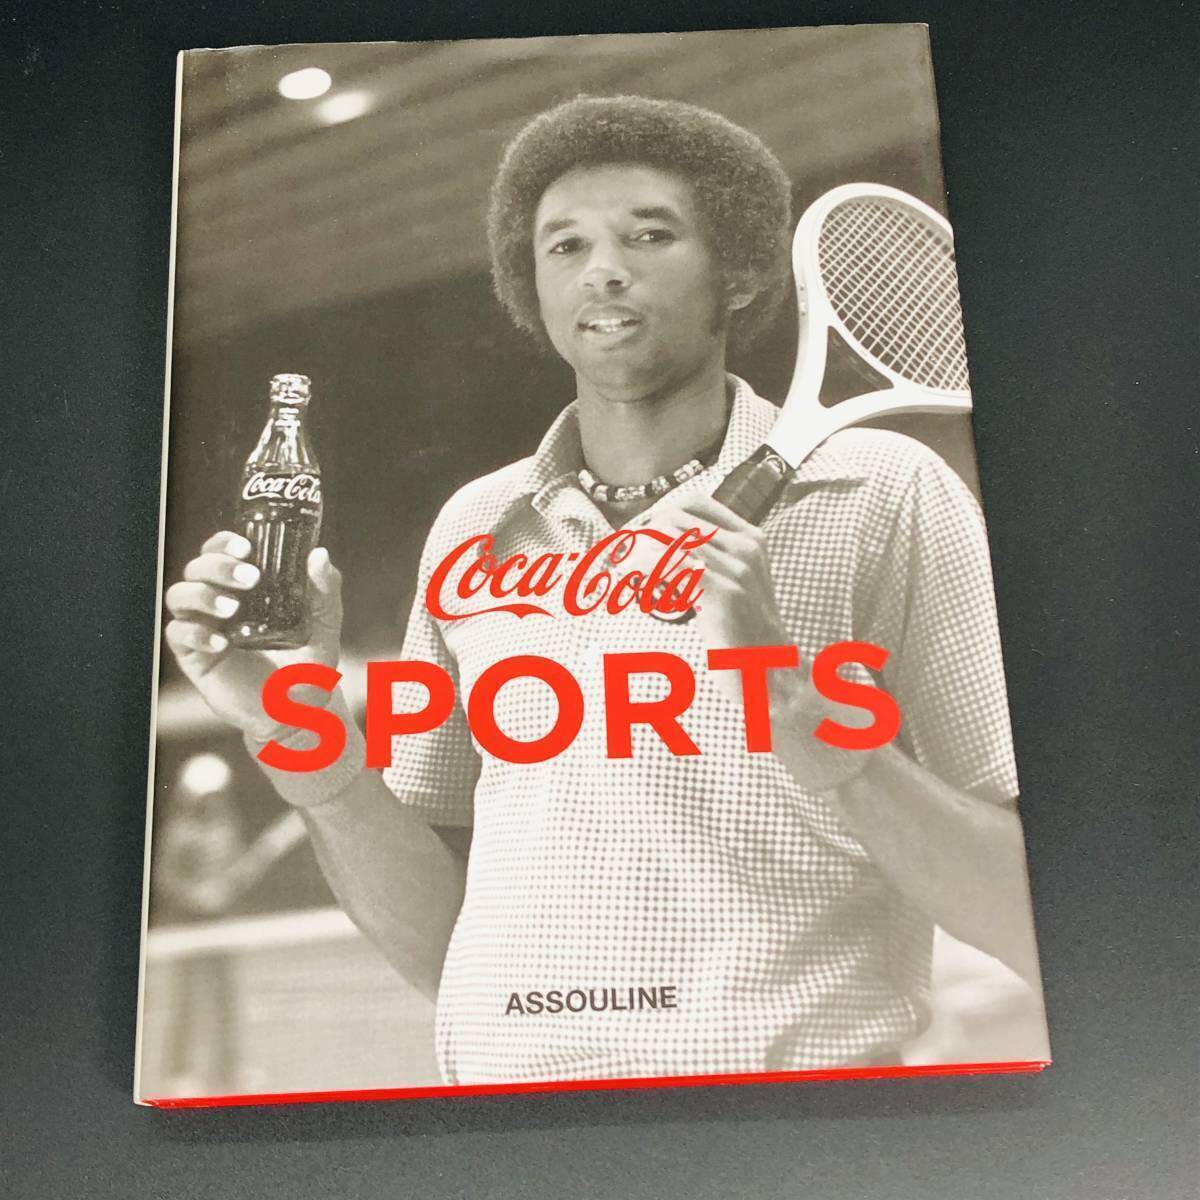 【 洋書 公式写真集 】コカ・コーラ BOXケース付 3巻 セット 映画 音楽 スポーツと Coca-Colaの共演